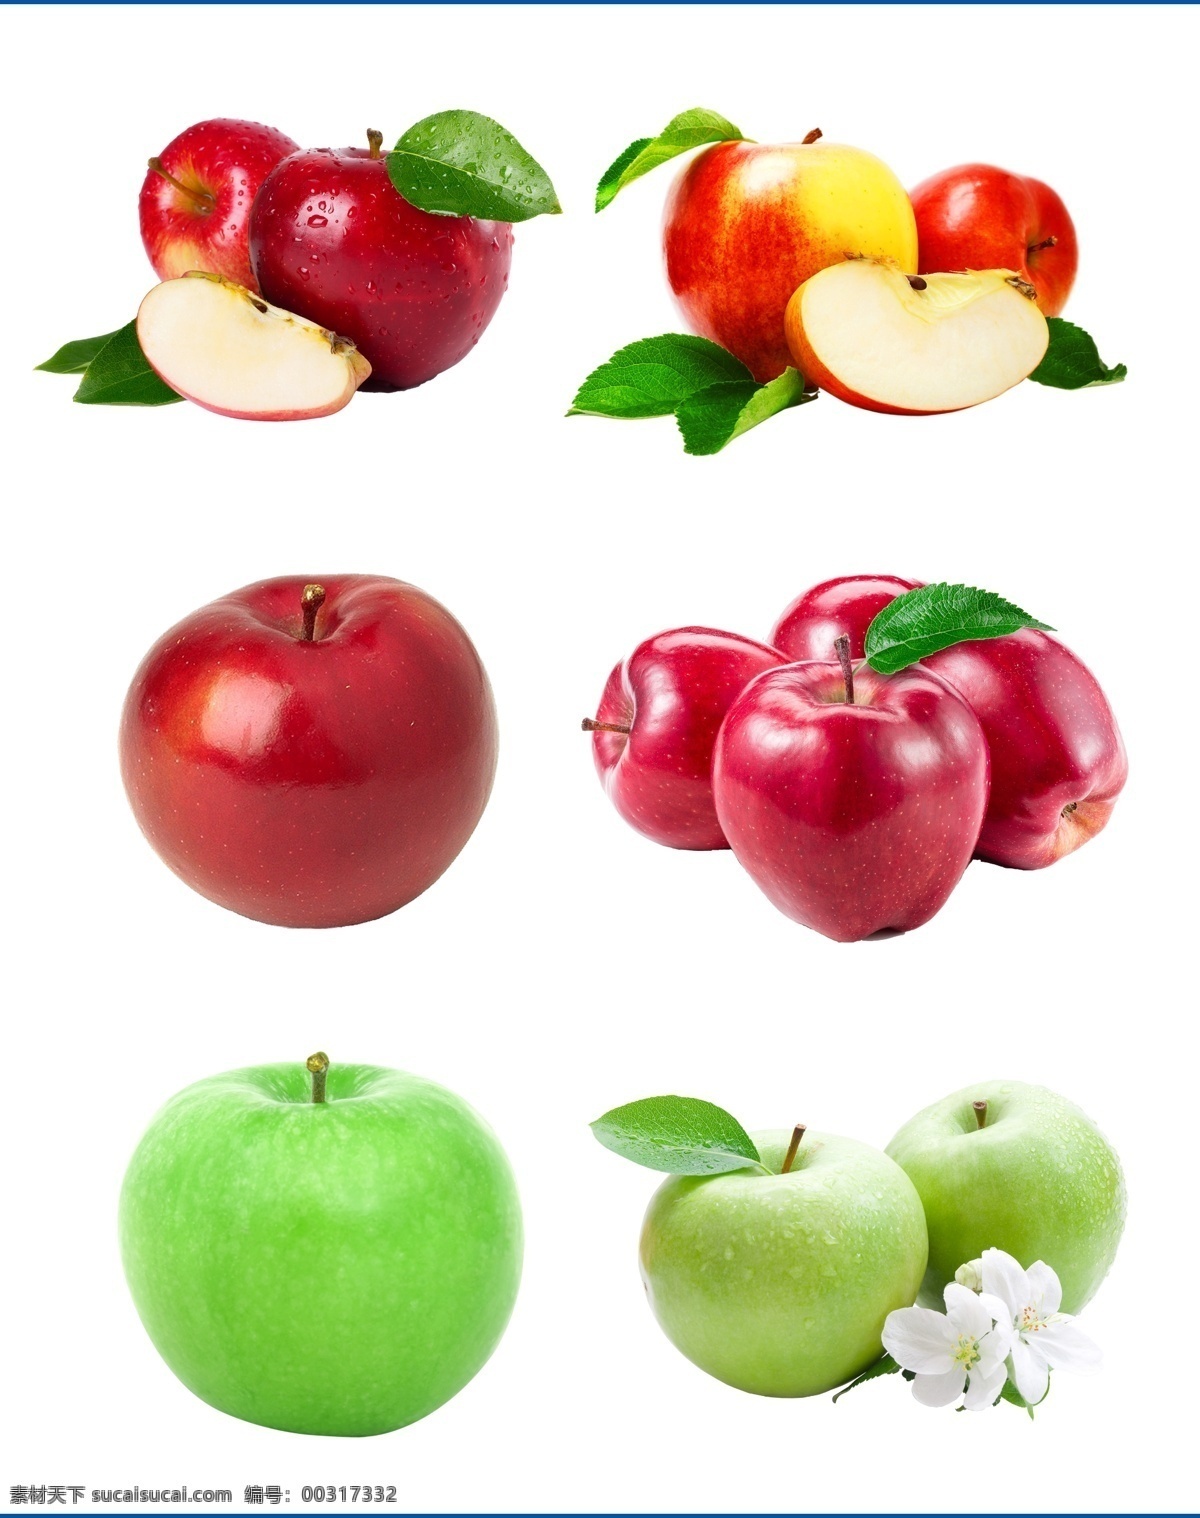 高清苹果素材 红苹果 青苹果图片 青苹果 富力苹果 小苹果 苹果